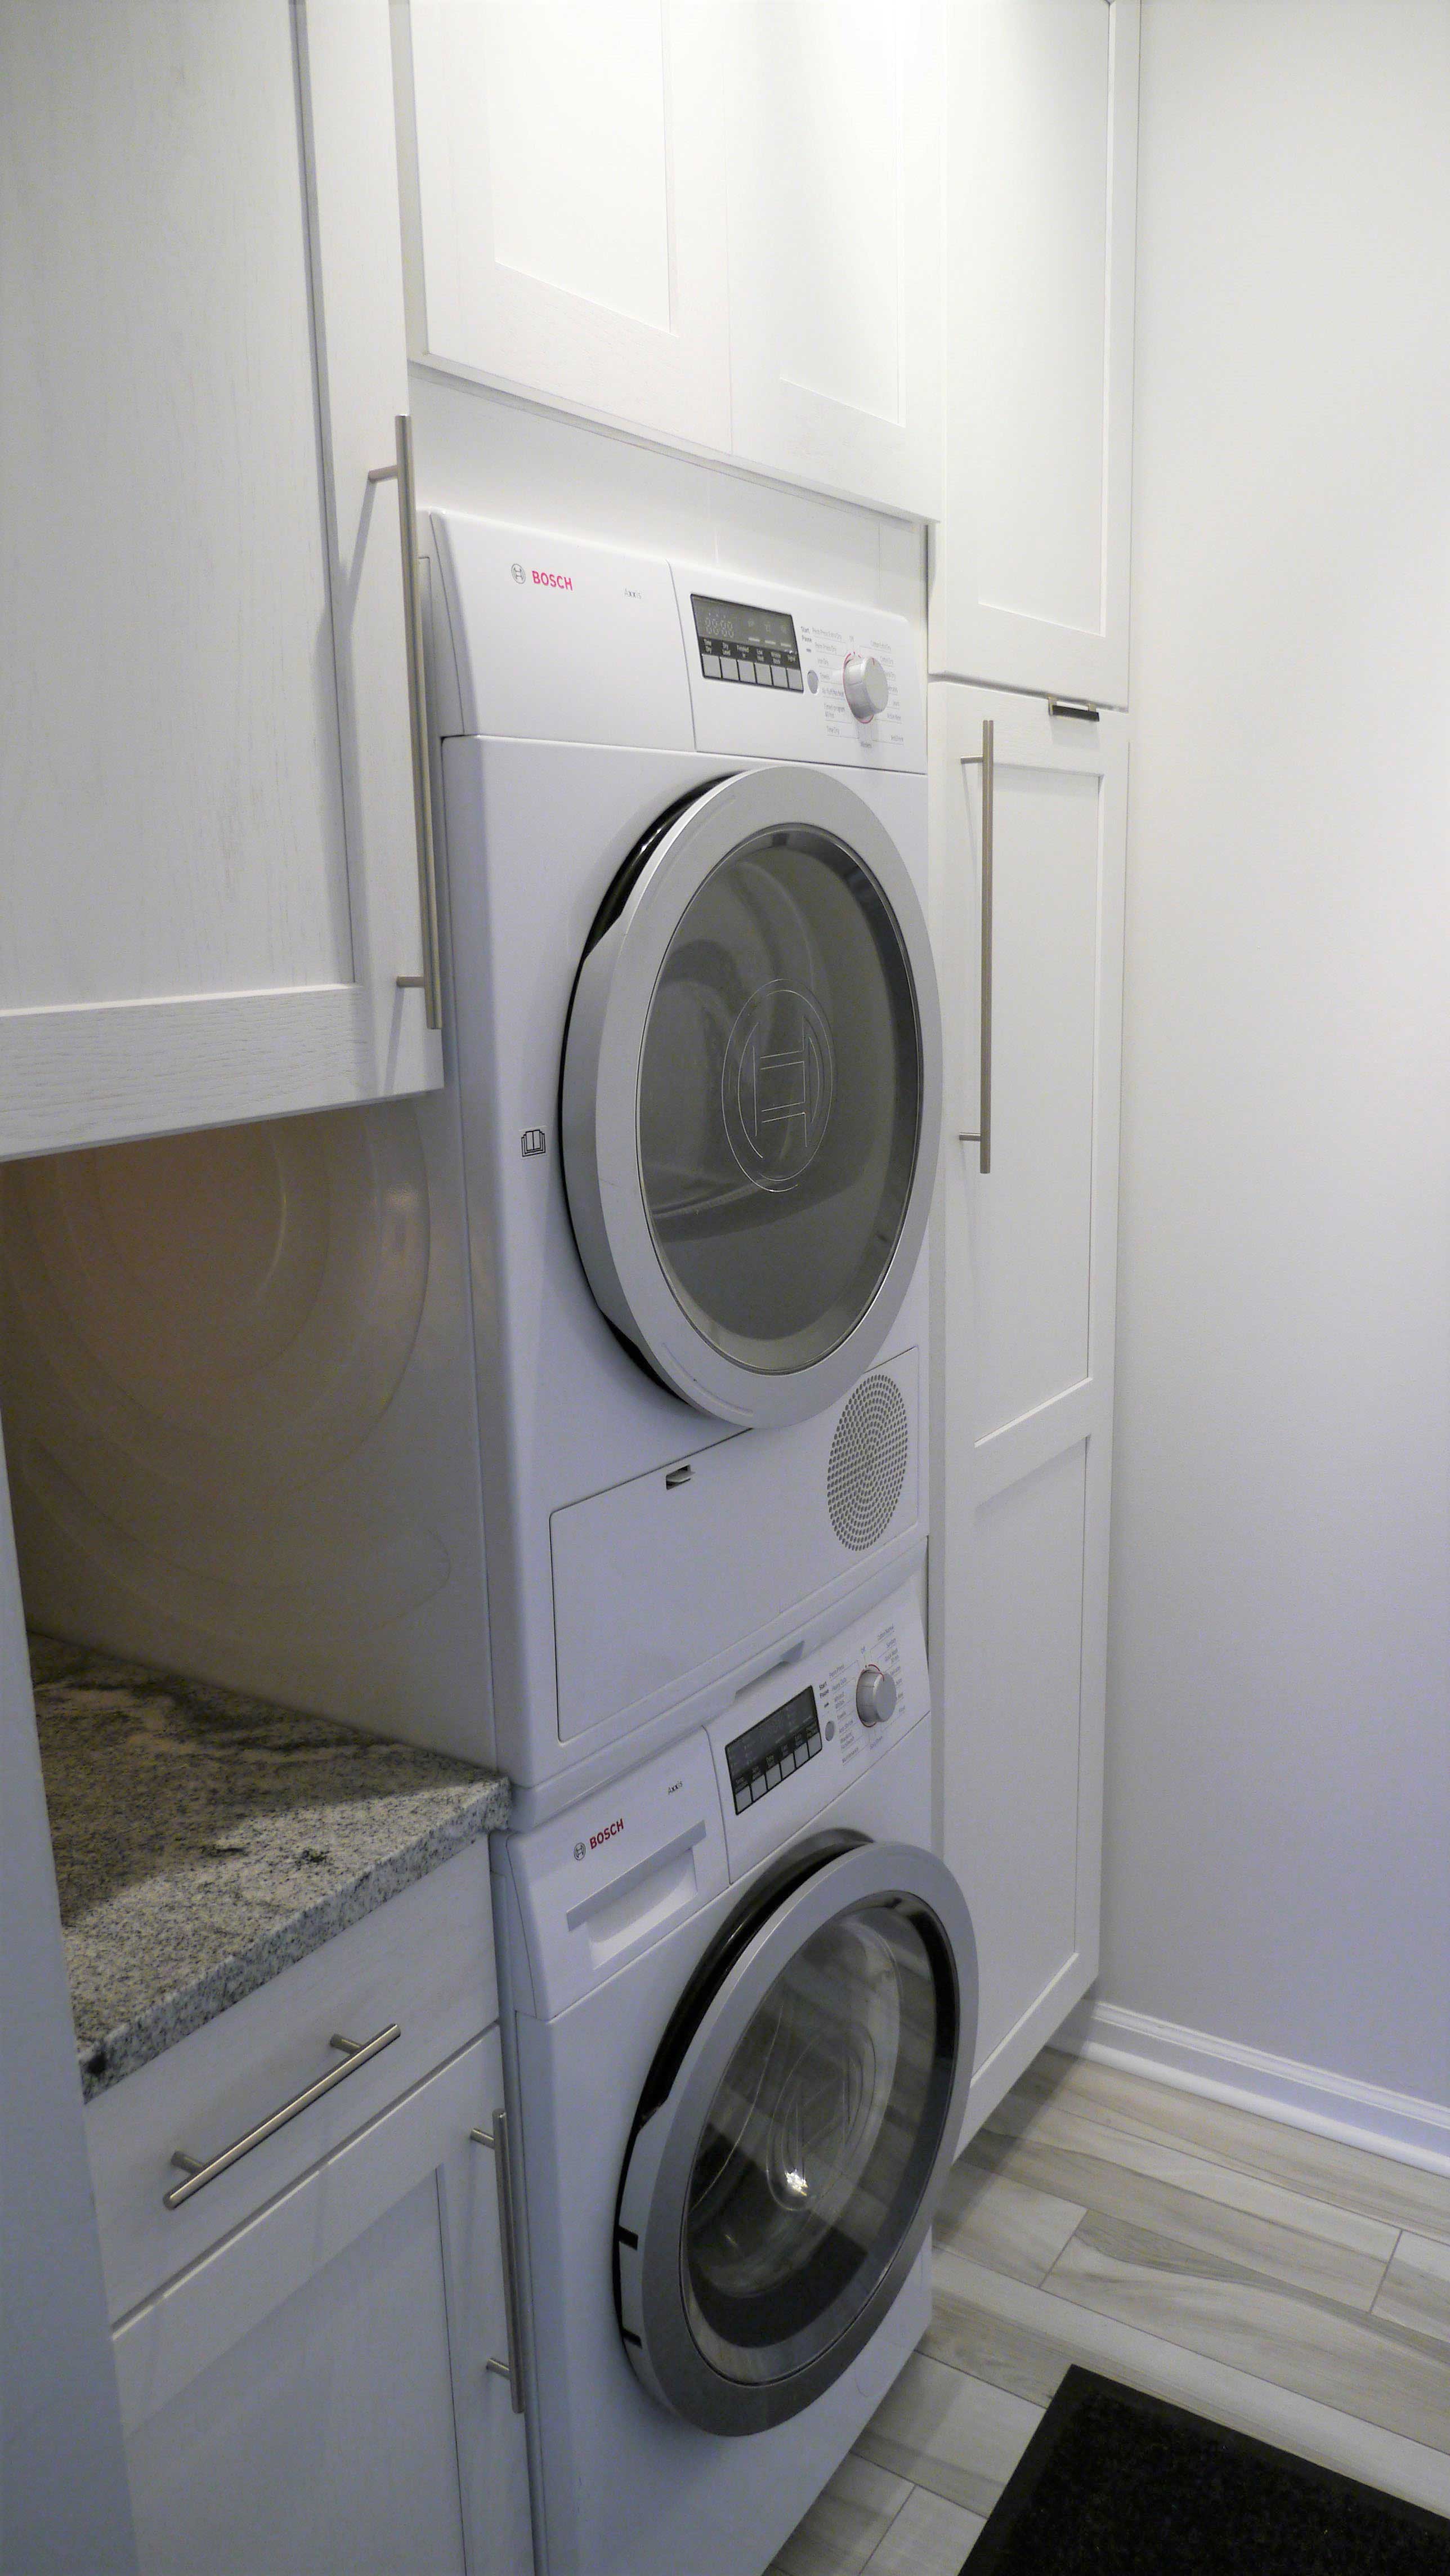 Washer dryer unit in kitchen